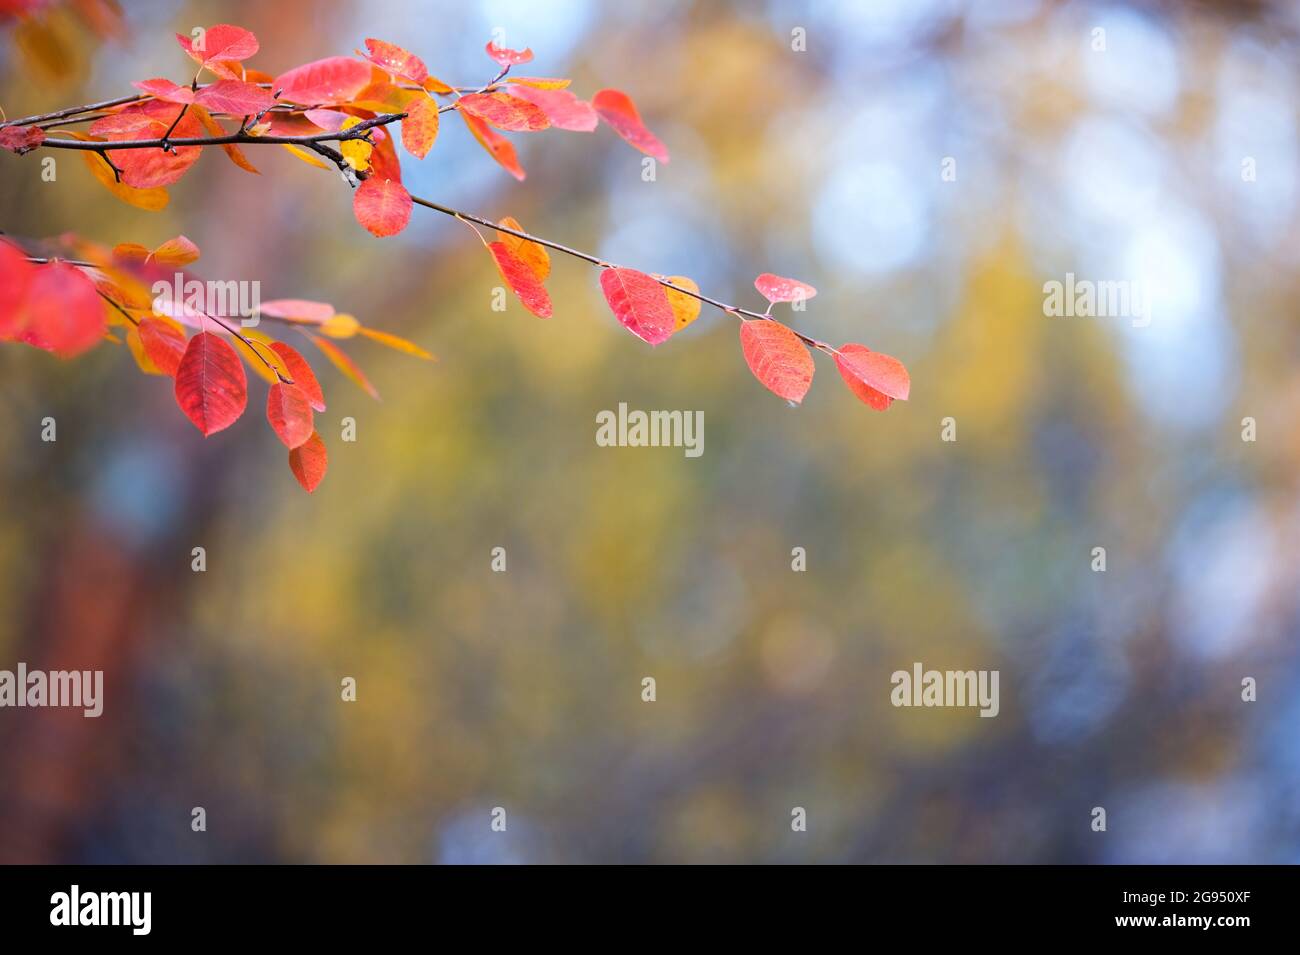 Branche de Saskatoon (Amelanchier alnifolia) avec des feuilles d'automne colorées sur fond défoqué. Mise au point sélective et faible profondeur de champ. Banque D'Images